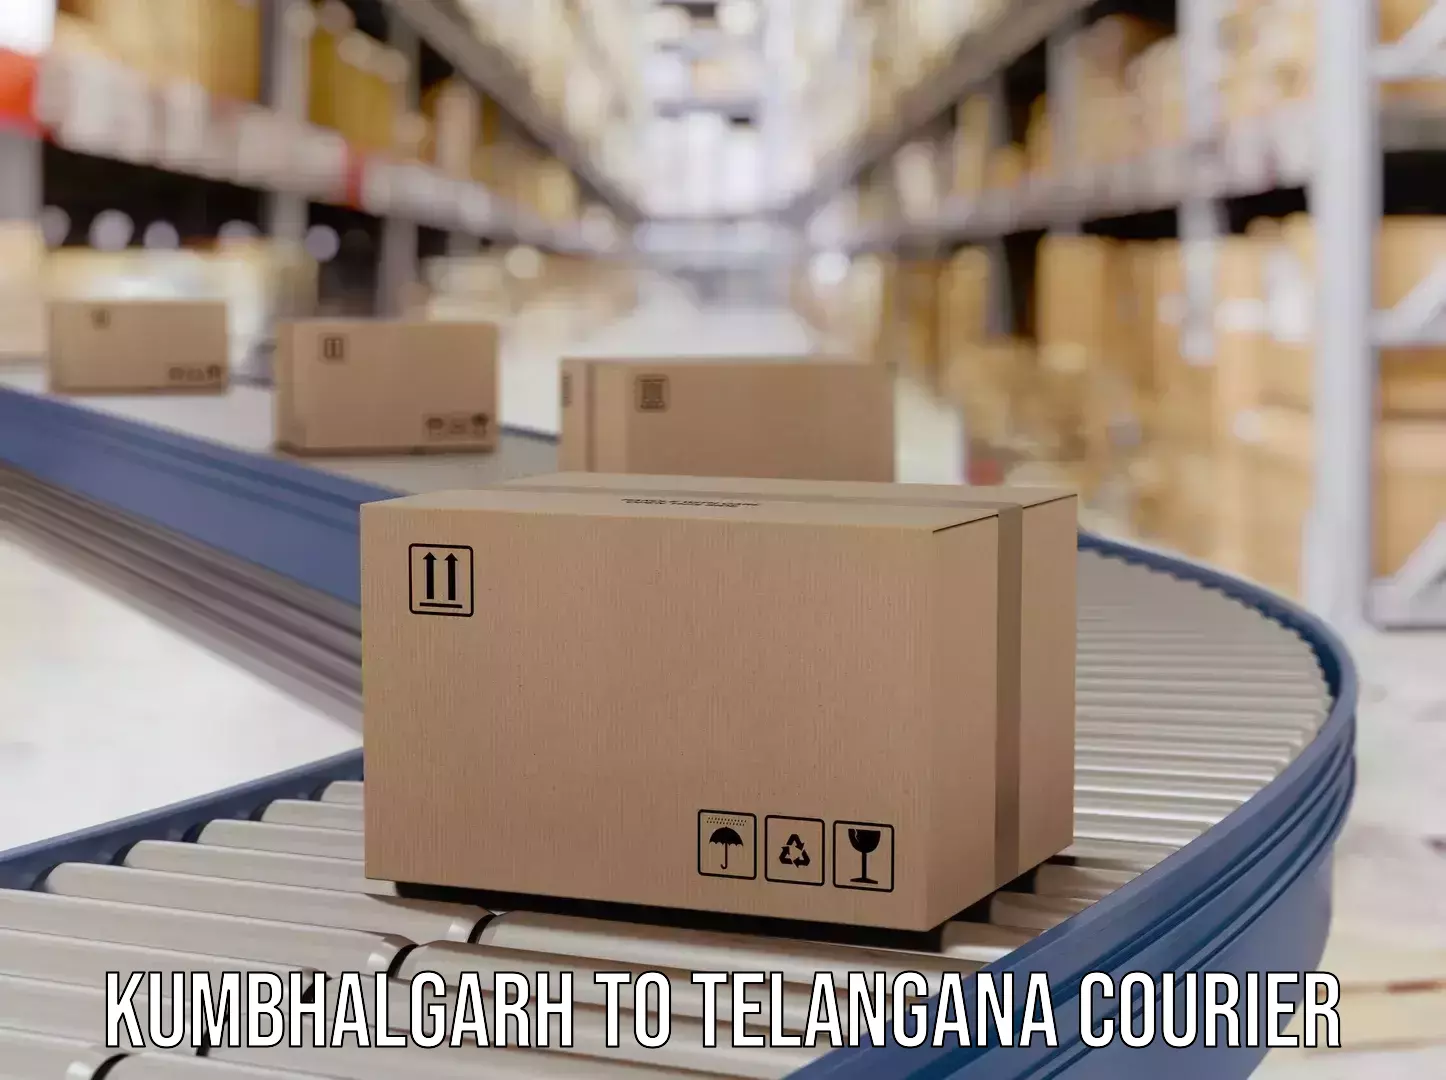 Expedited shipping methods Kumbhalgarh to Telangana